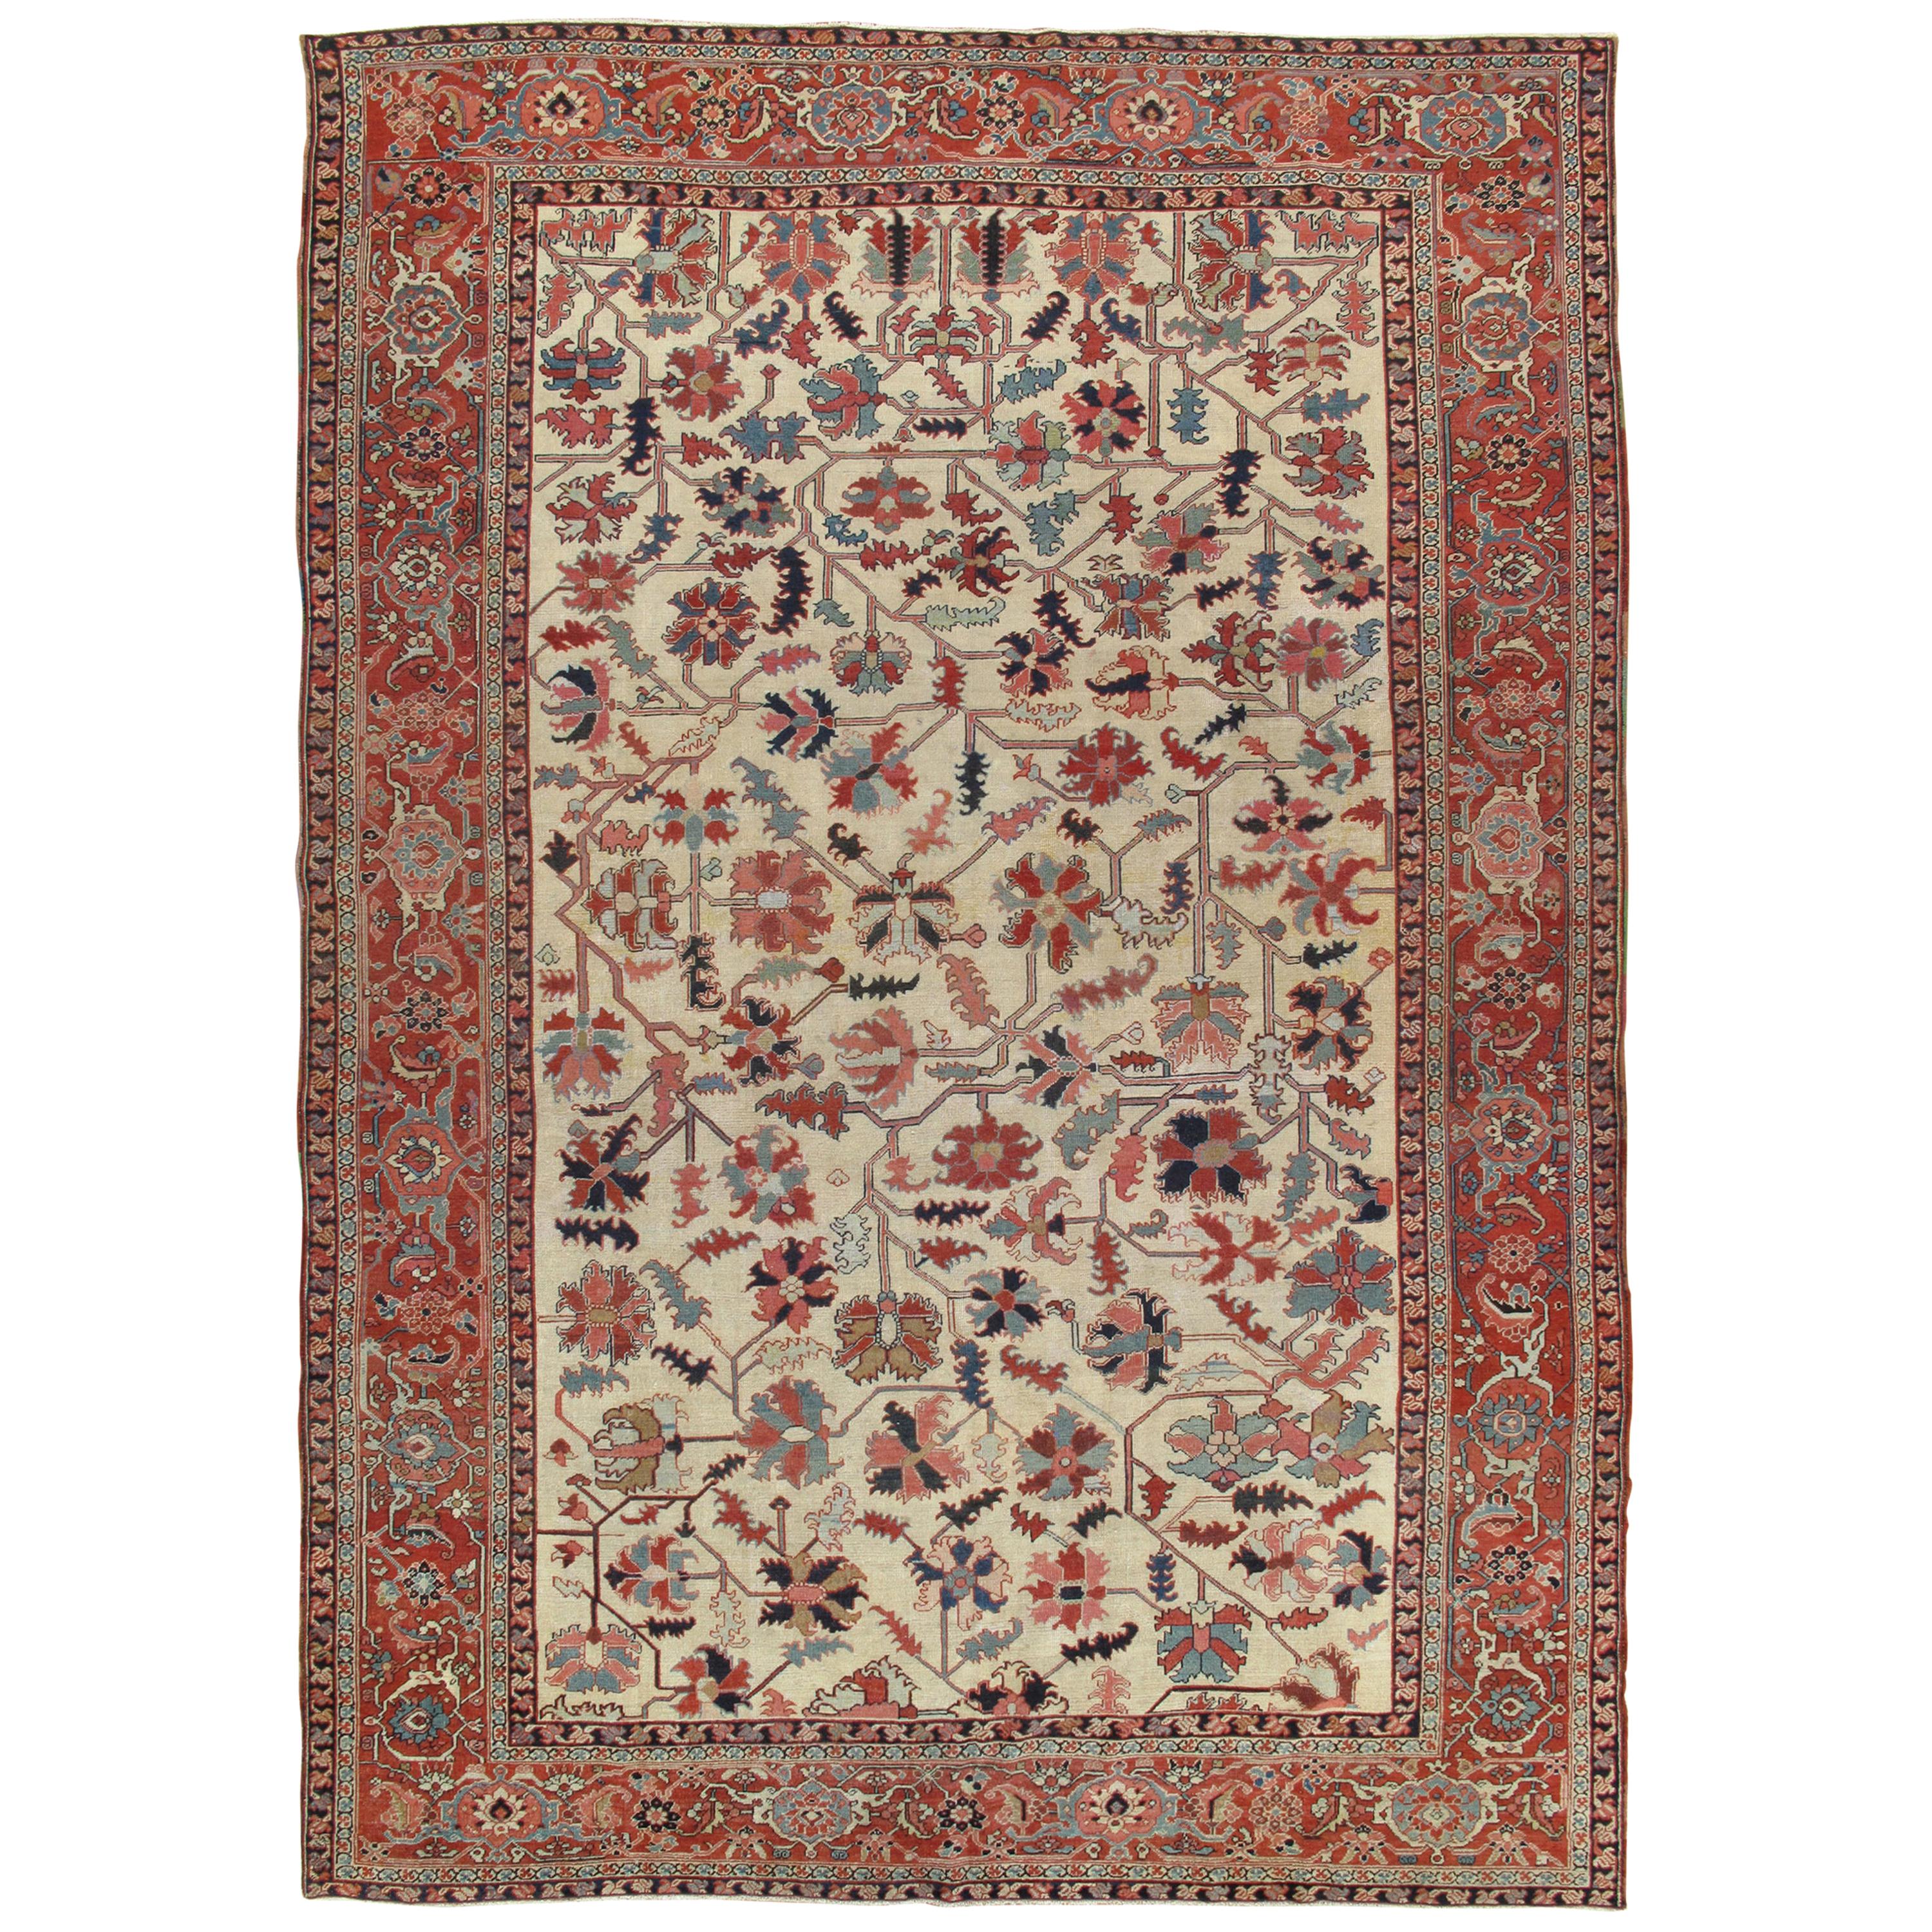 Antiker persischer Serapi-Teppich, handgefertigter orientalischer Teppich aus Wolle, elfenbeinfarben und hellblau